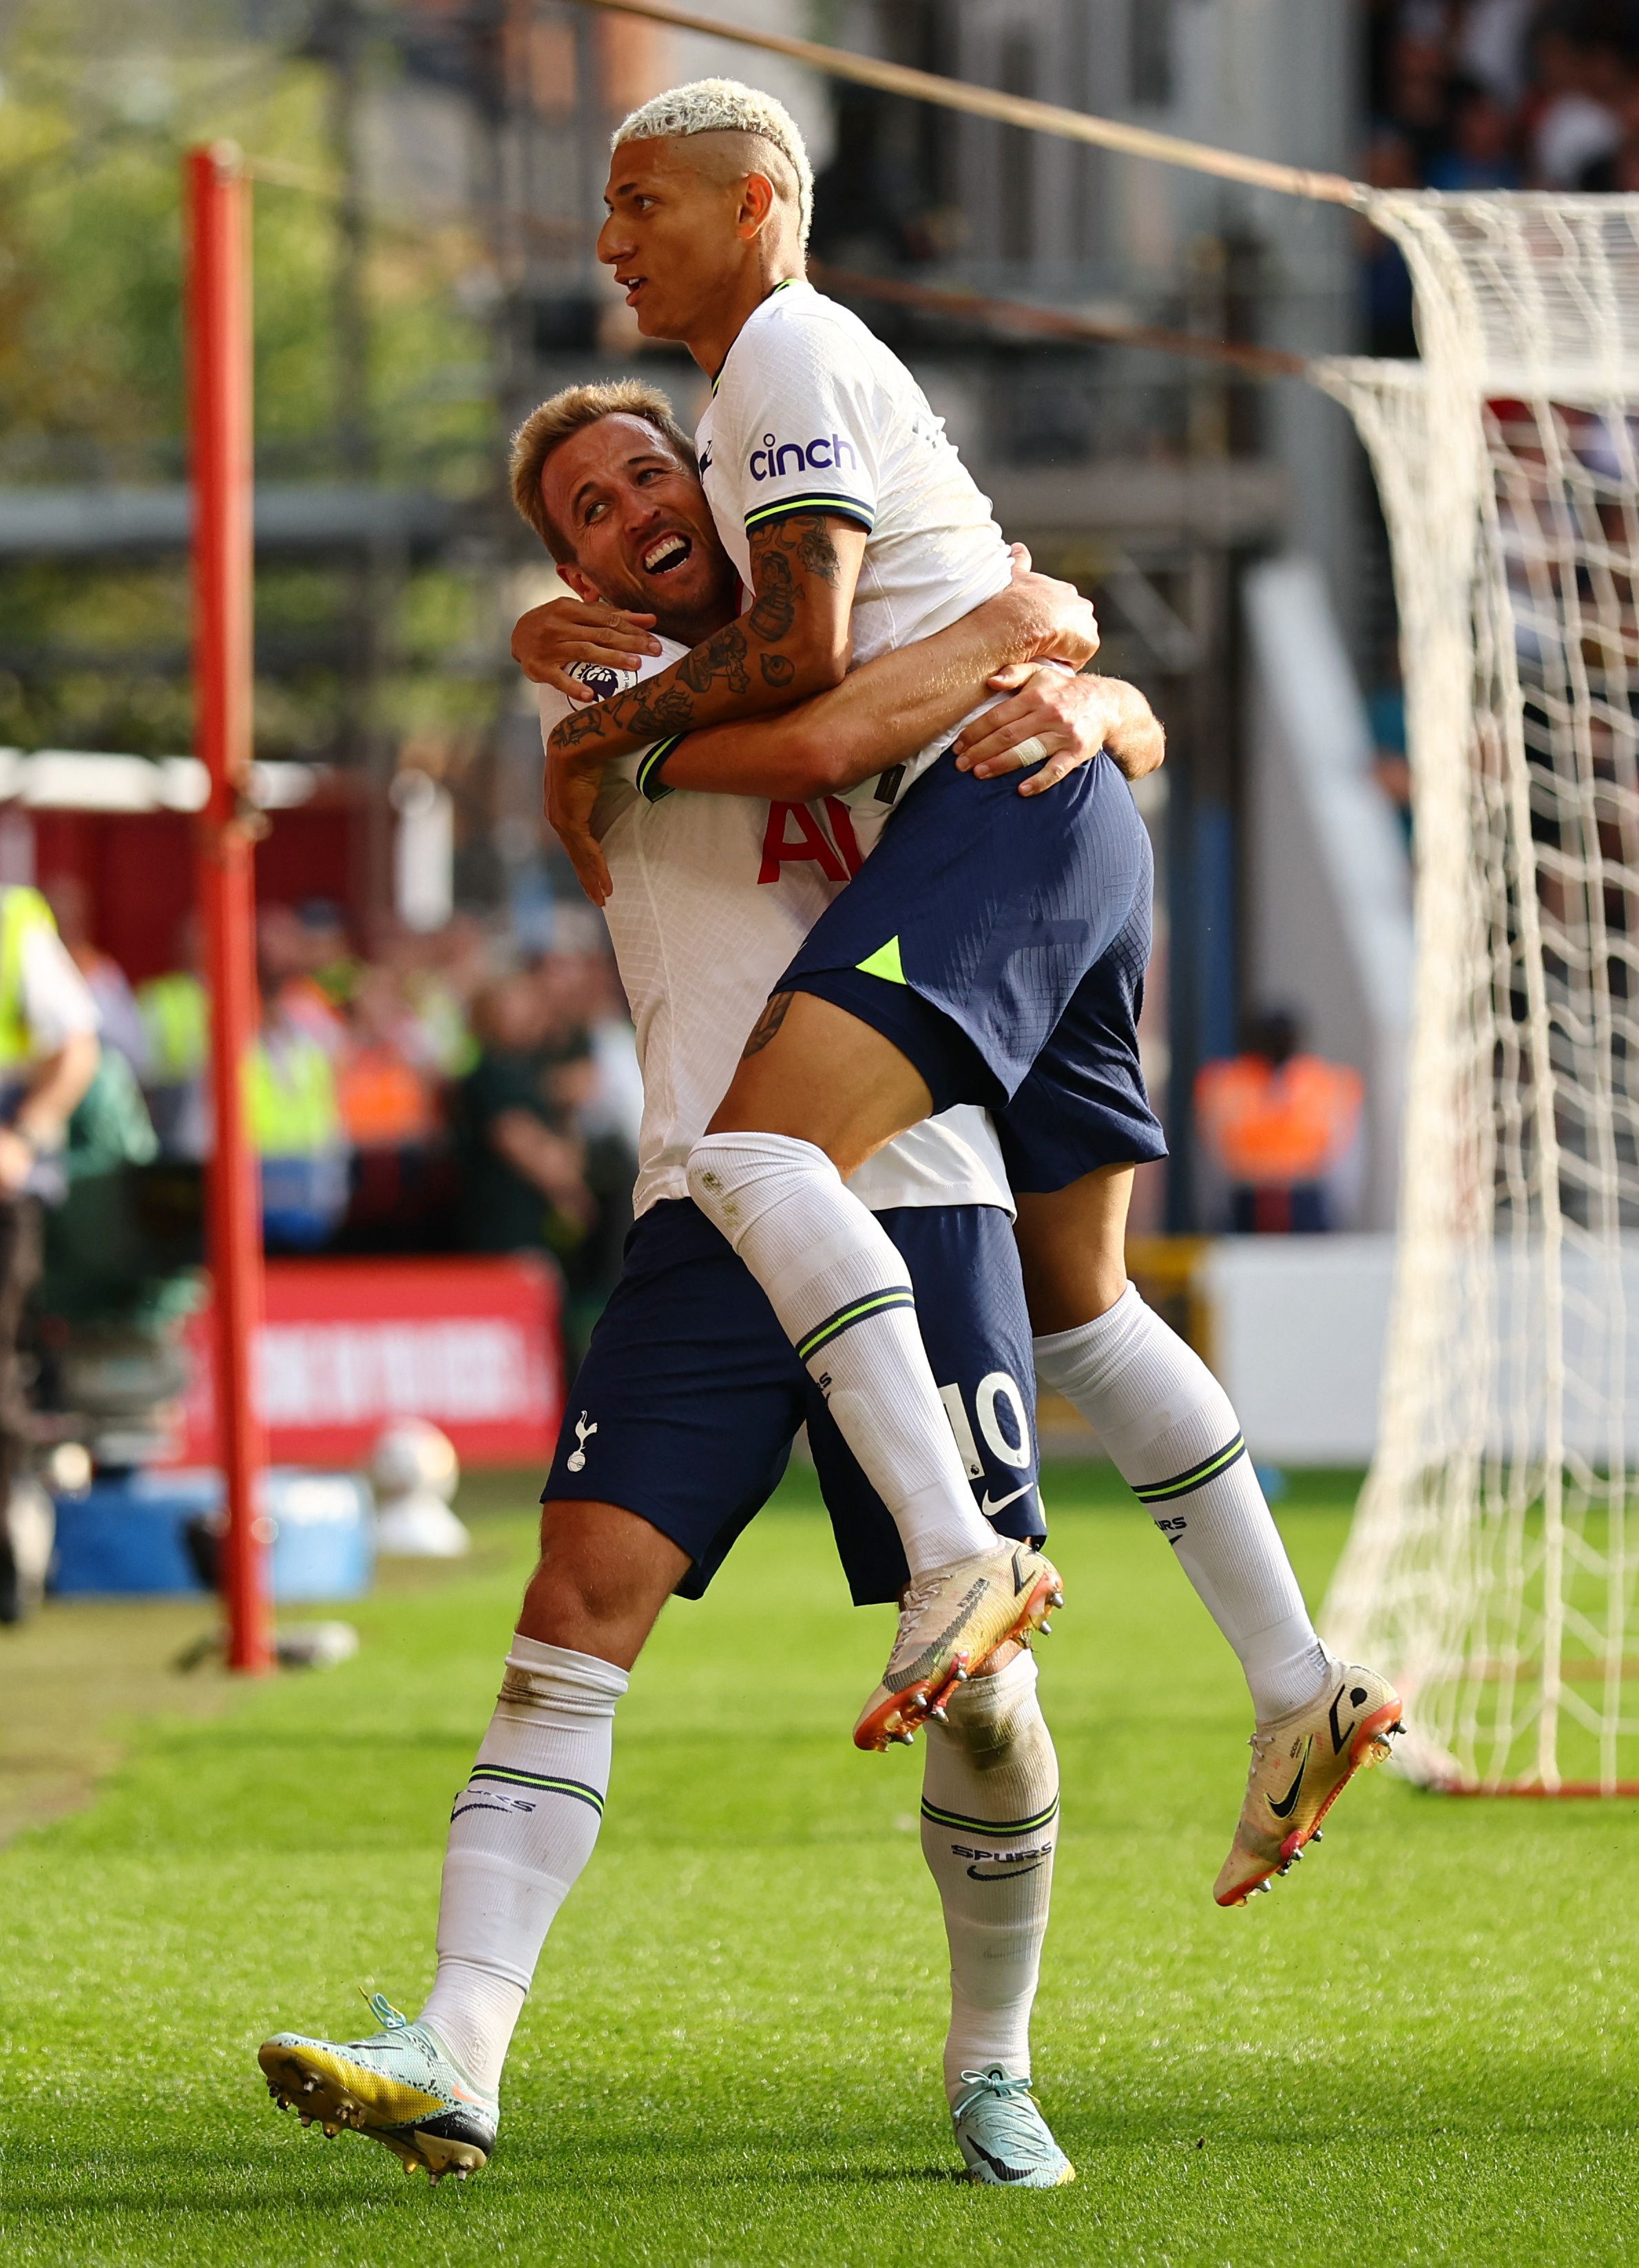 Kane scores for Tottenham.